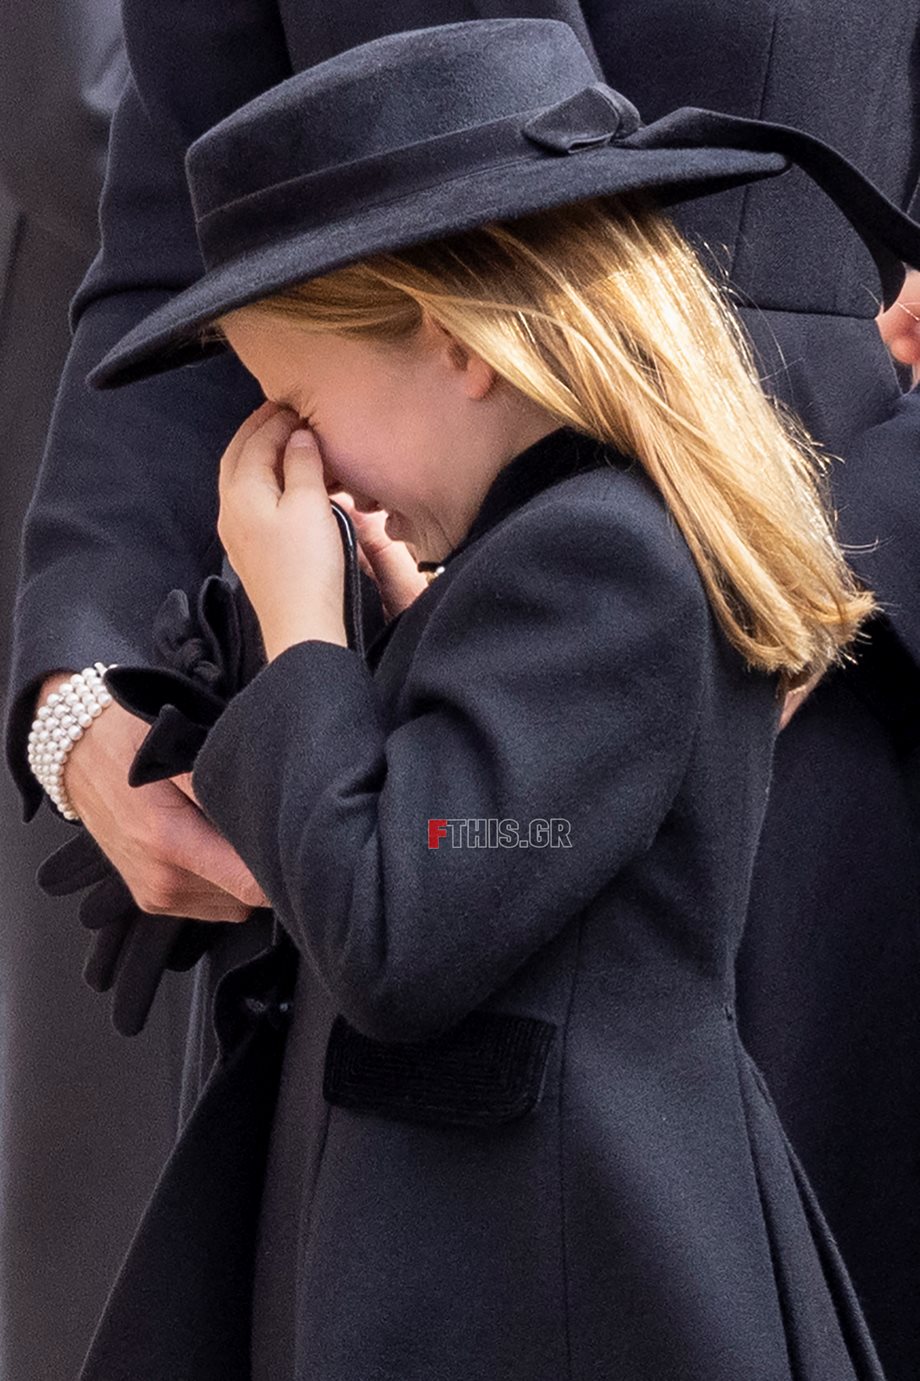 Κηδεία βασίλισσας Ελισάβετ: Η συγκλονιστική στιγμή που η 7χρονη πριγκίπισσα Σάρλοτ ξεσπά σε κλάματα